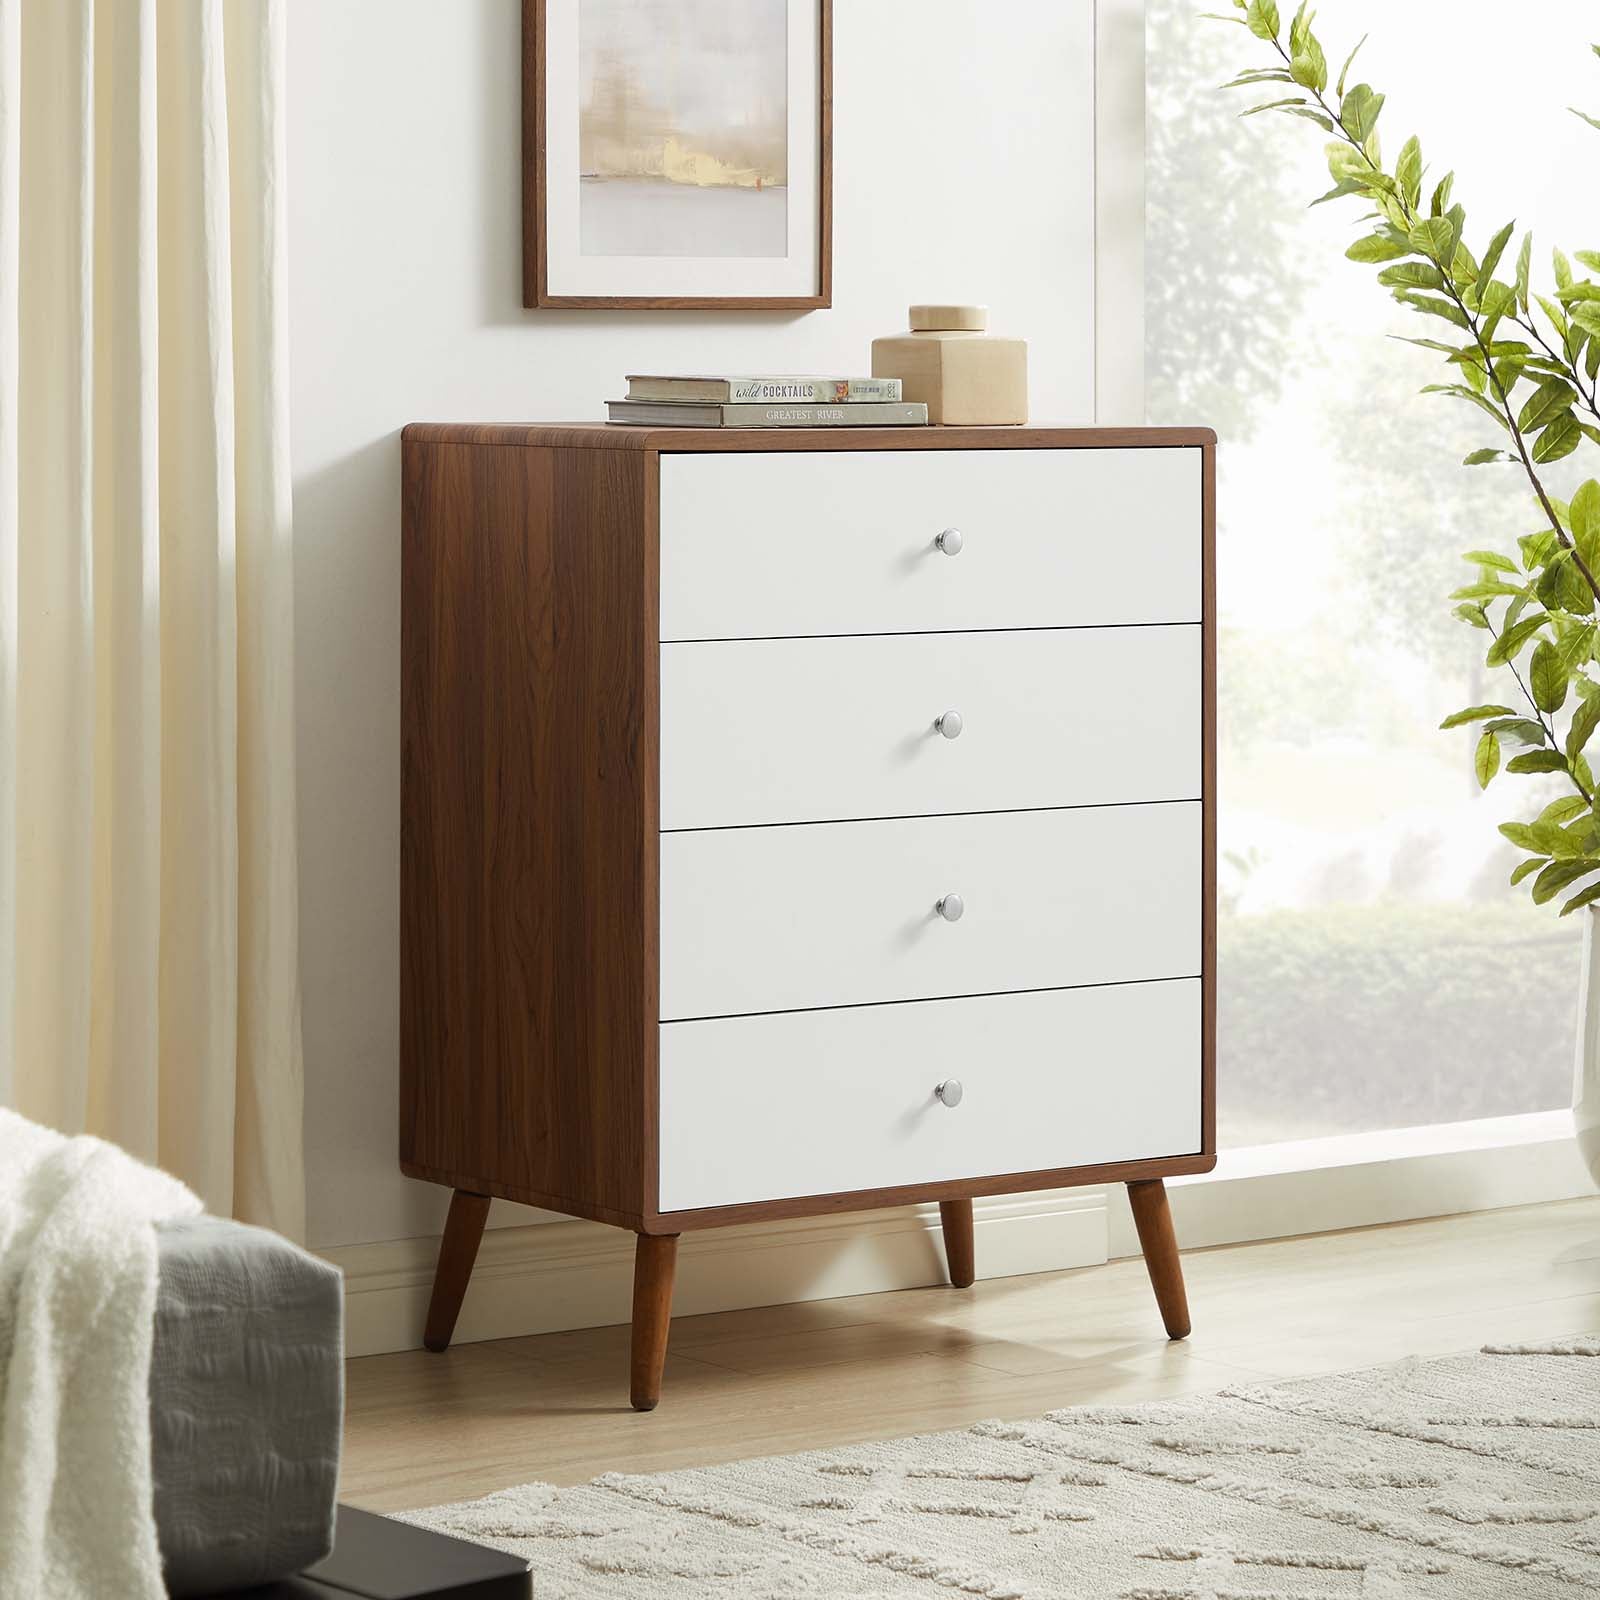 Modway Soma 3-Drawer Dresser in Walnut, 31 x 18.5 x 30